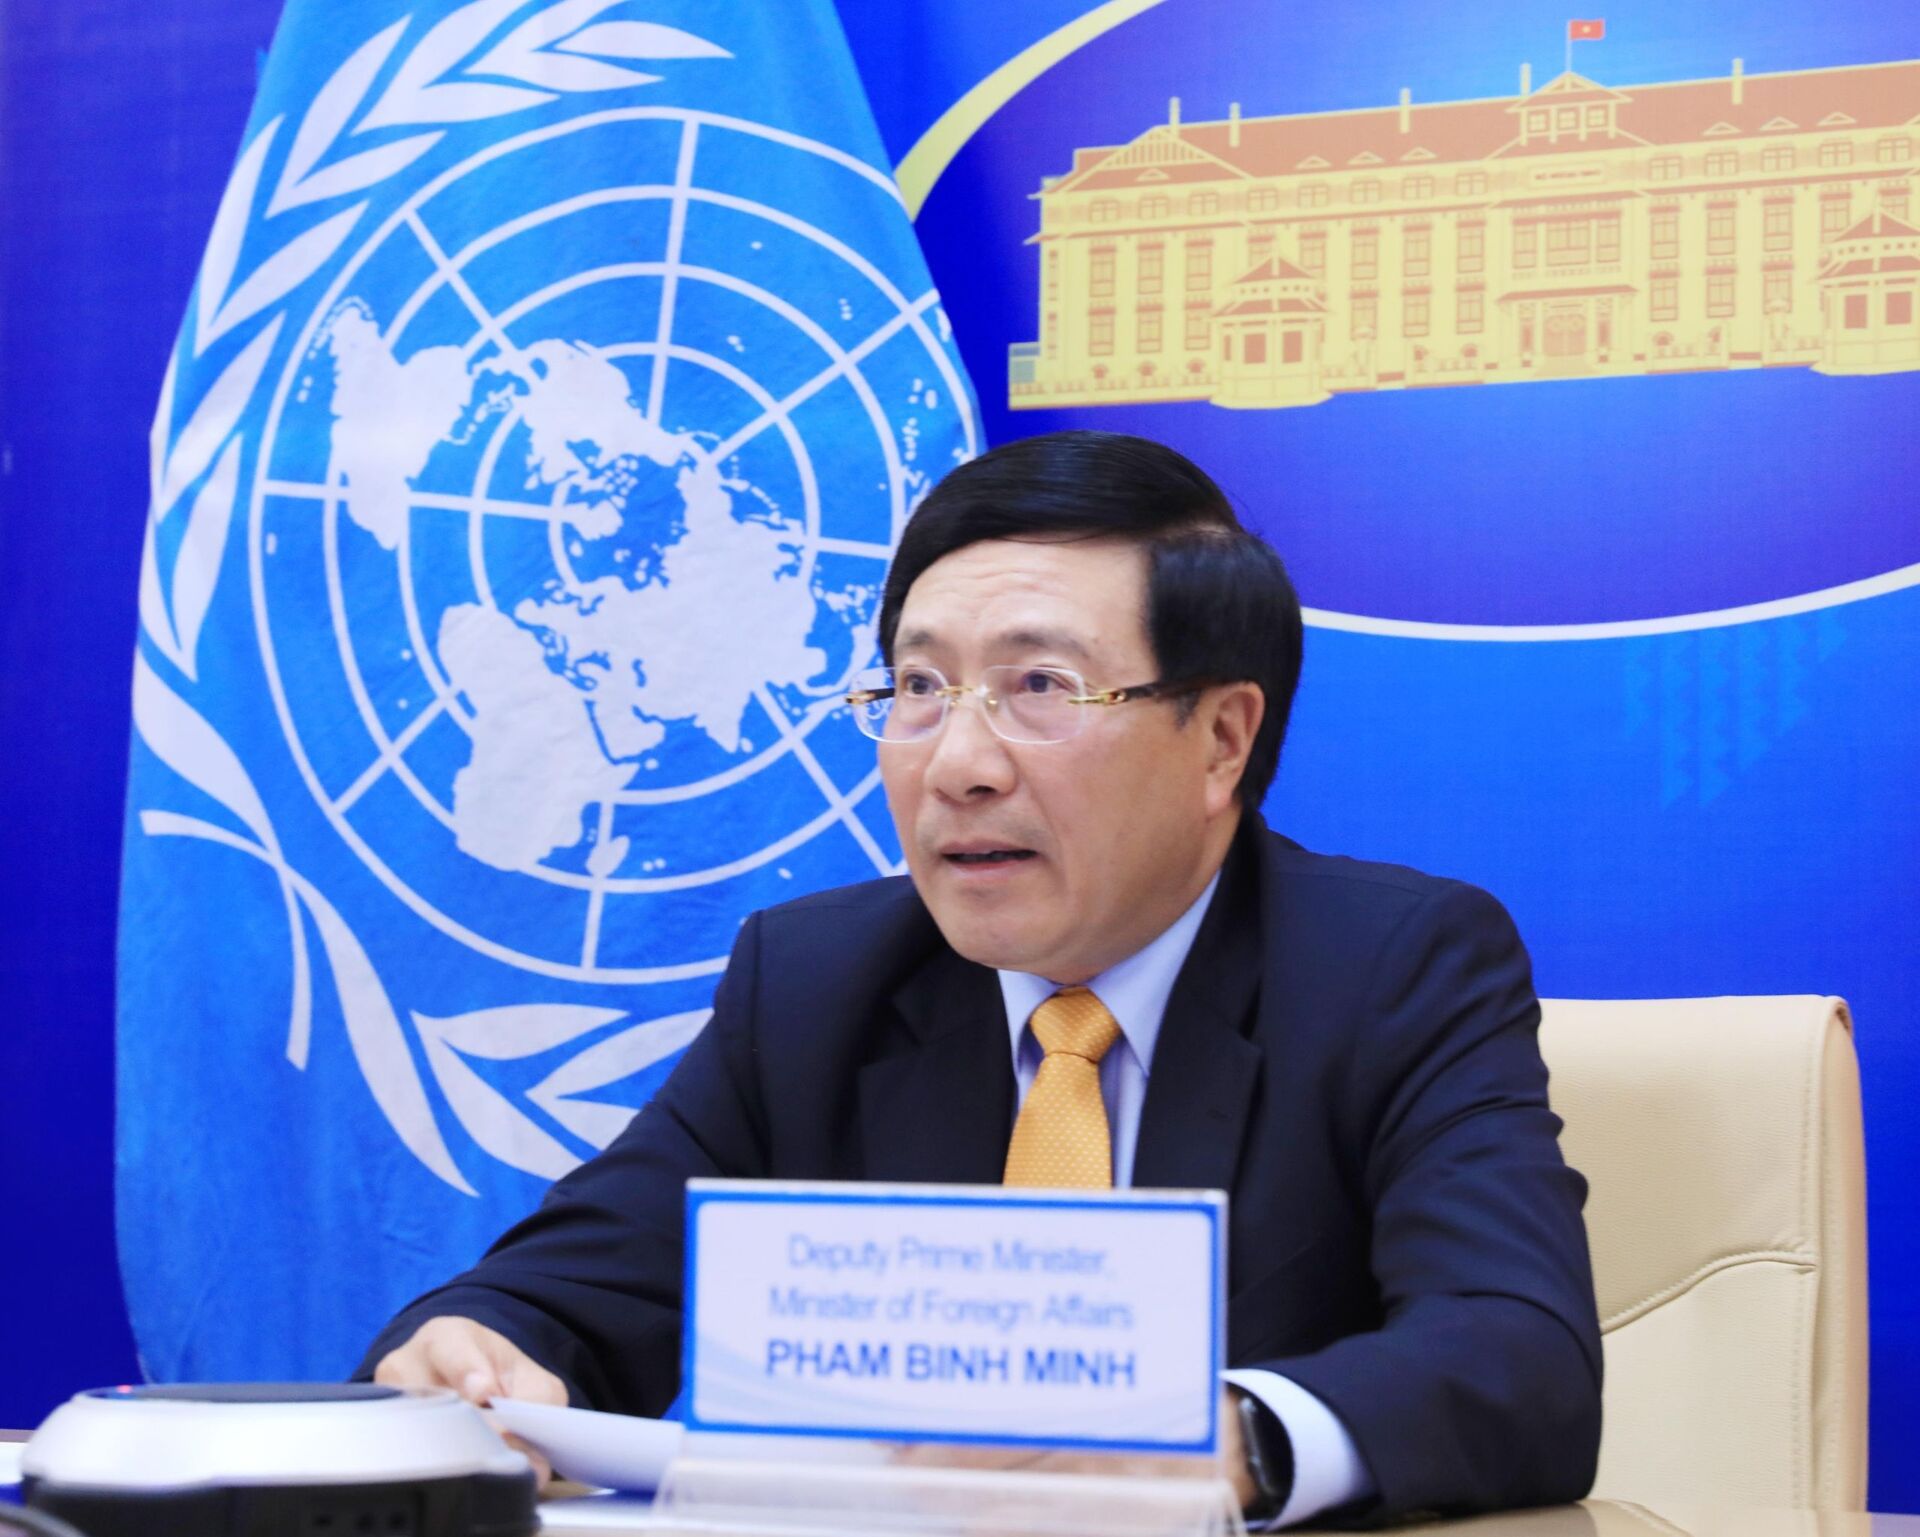 Việt Nam tham gia ứng cử vào Hội đồng Nhân quyền LHQ nhiệm kỳ 2023-2025 - Sputnik Việt Nam, 1920, 23.02.2021